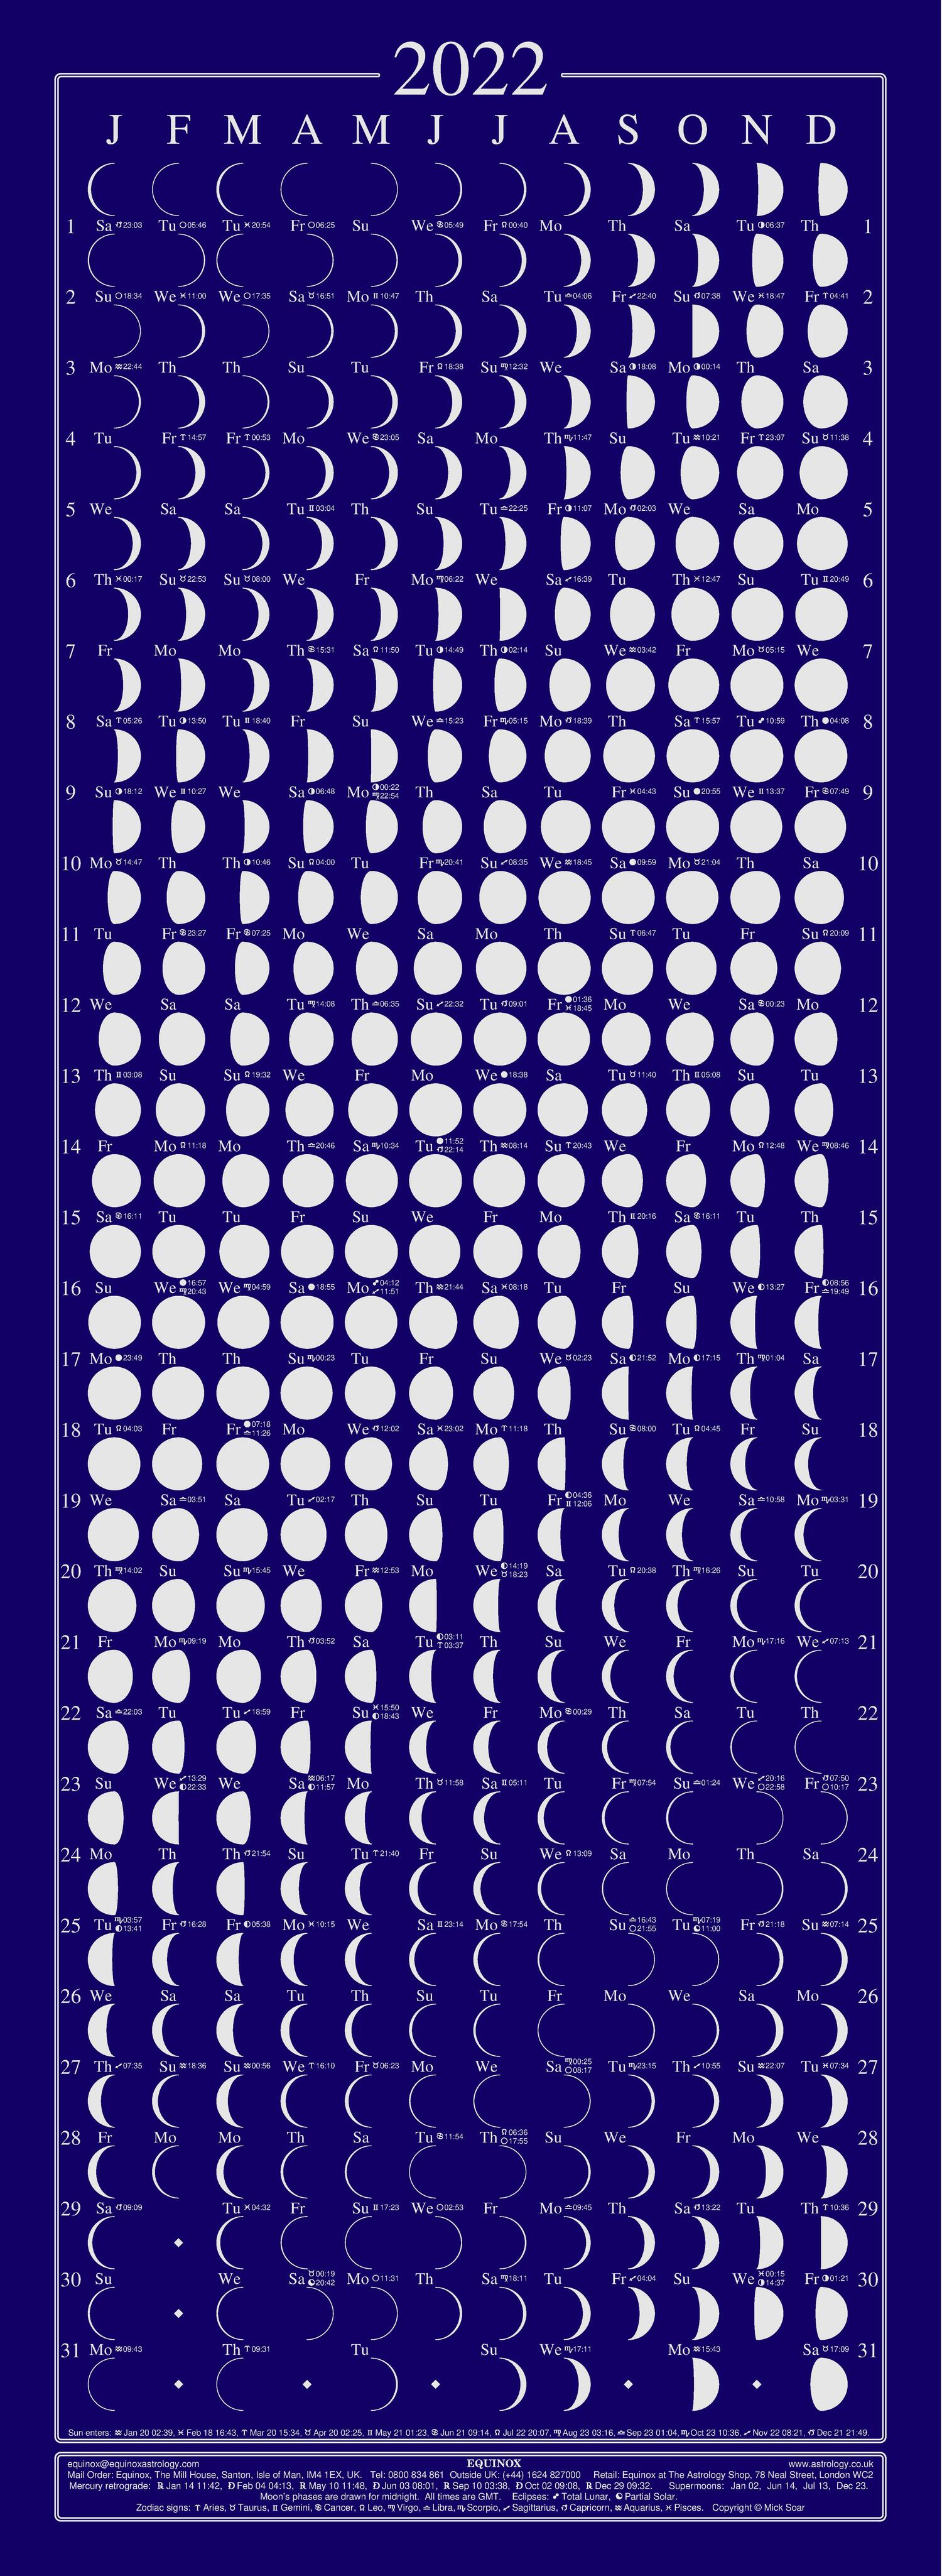 Moon Calendar Detail